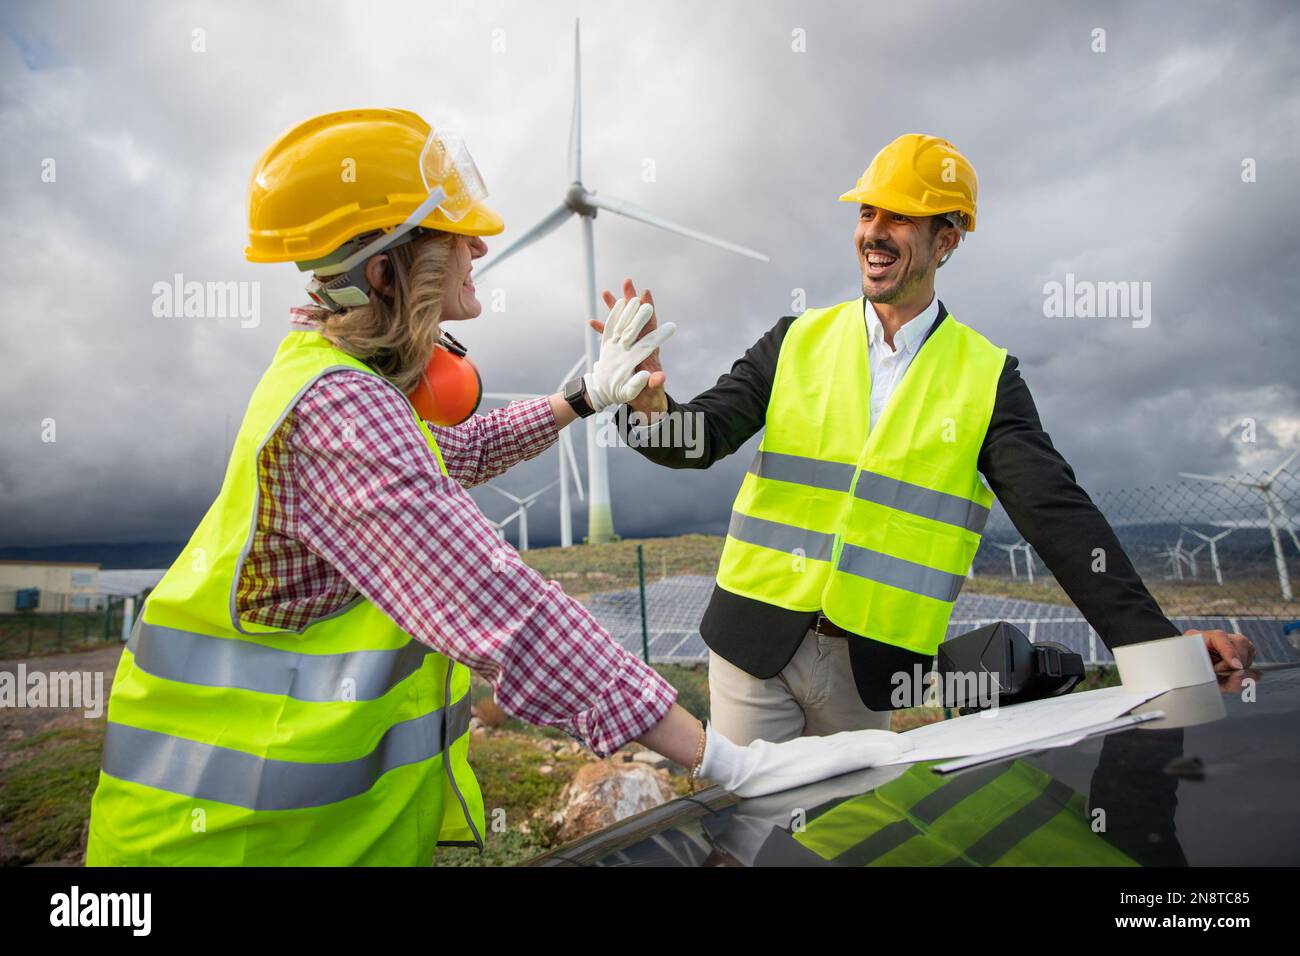 Deux collègues satisfaits se donnent un haut cinq pendant qu'ils travaillent en consultant un dessin technique dans une ferme solaire. Banque D'Images